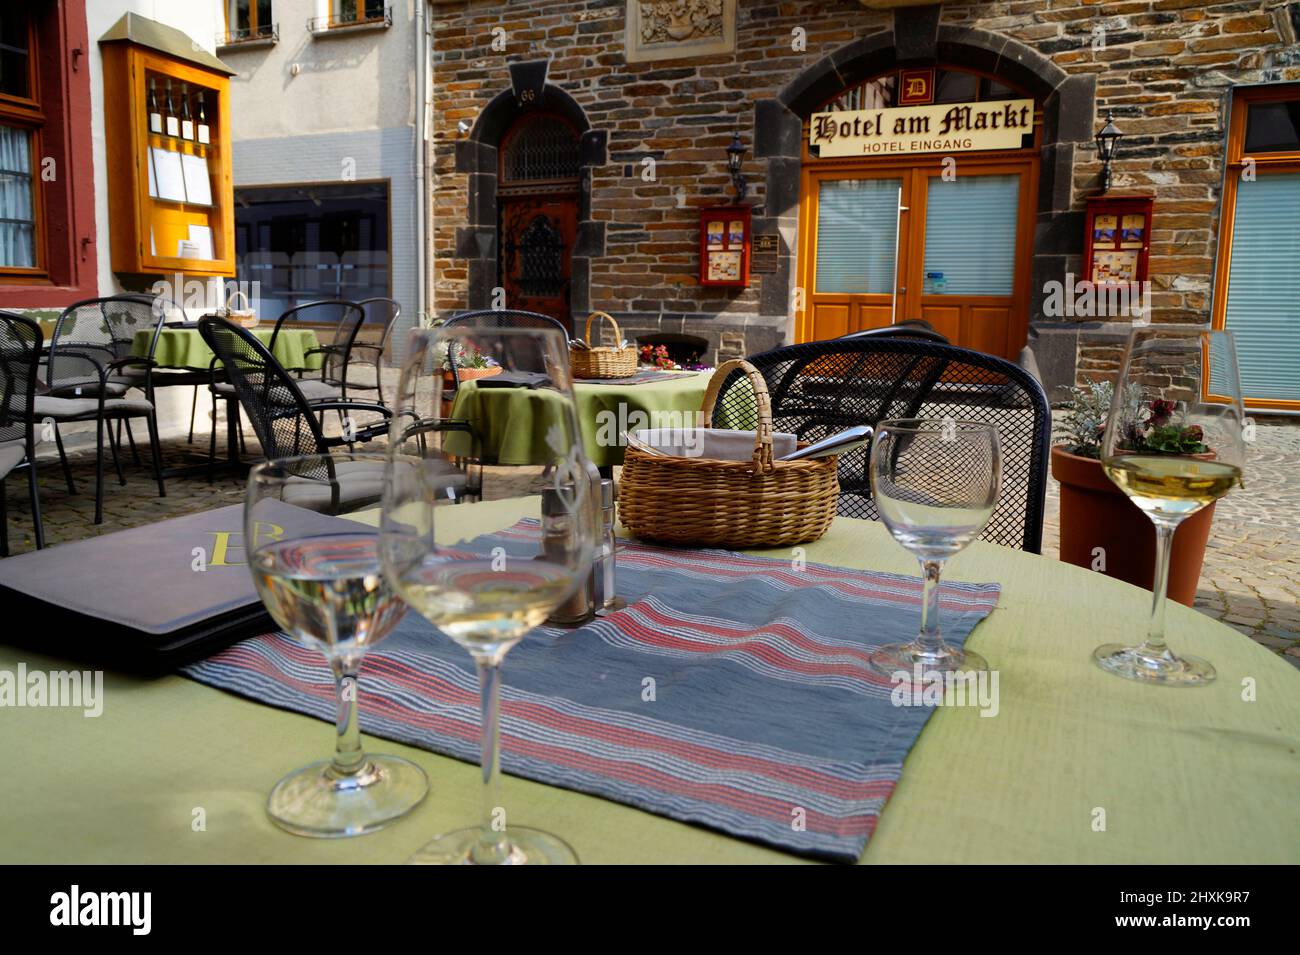 Cena e cena per due nella romantica cittadina di Bacharach sul Reno (Rhein), Germania Foto Stock